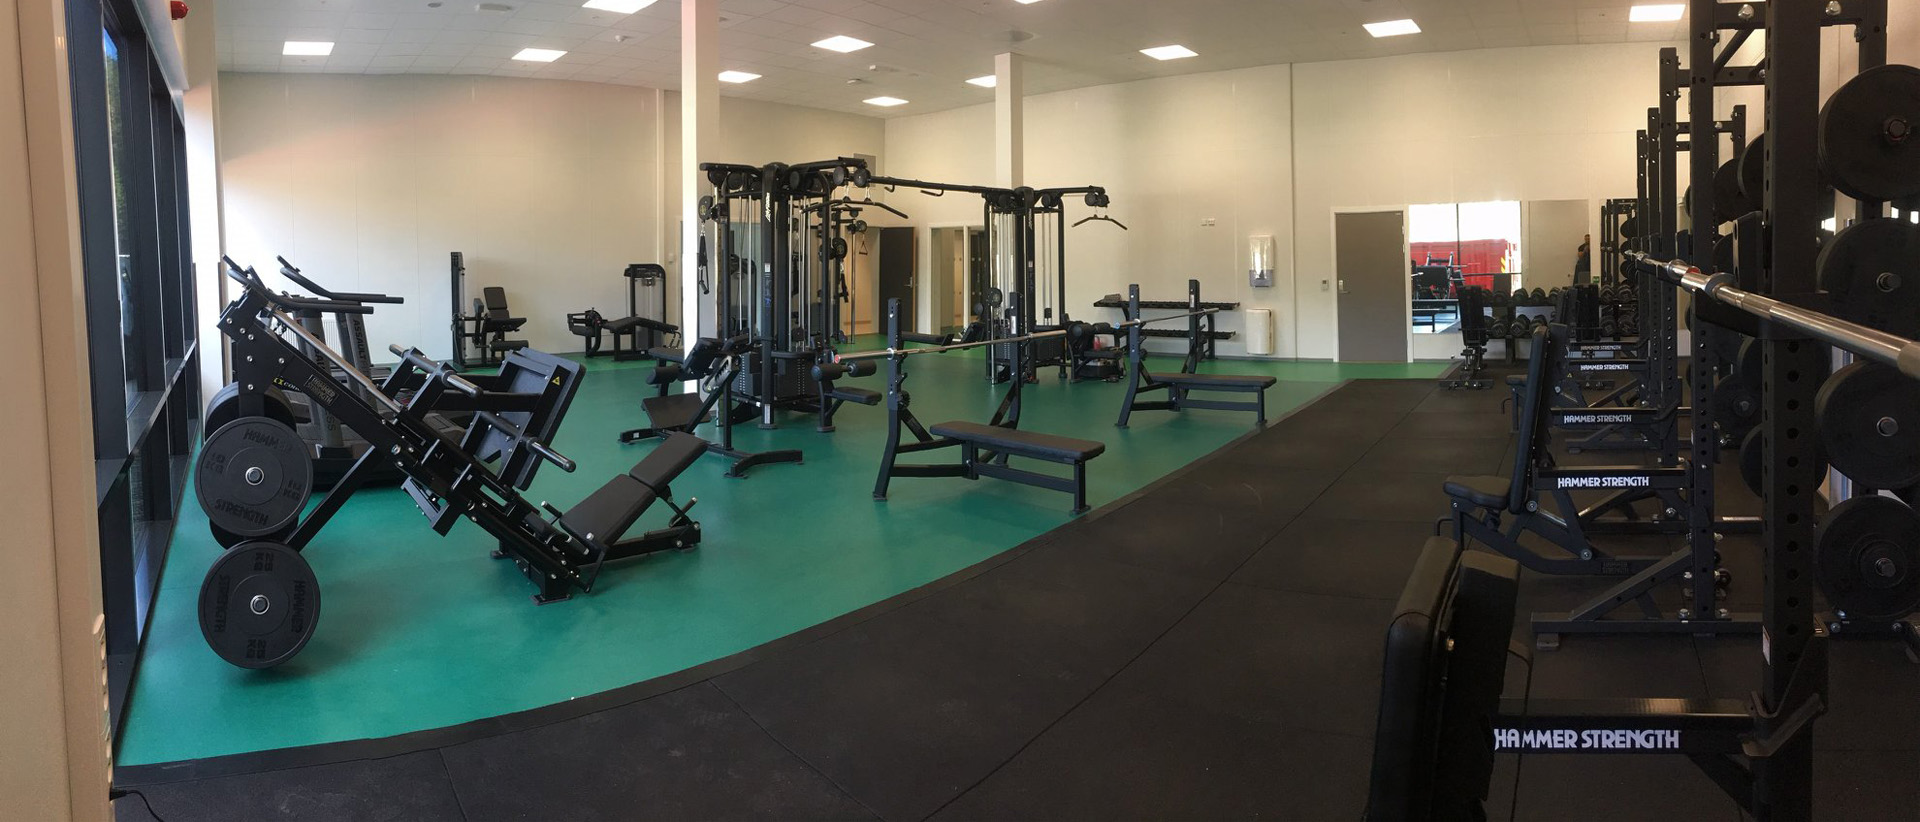 treningsrom med svarte treningsapparater grønt gulv